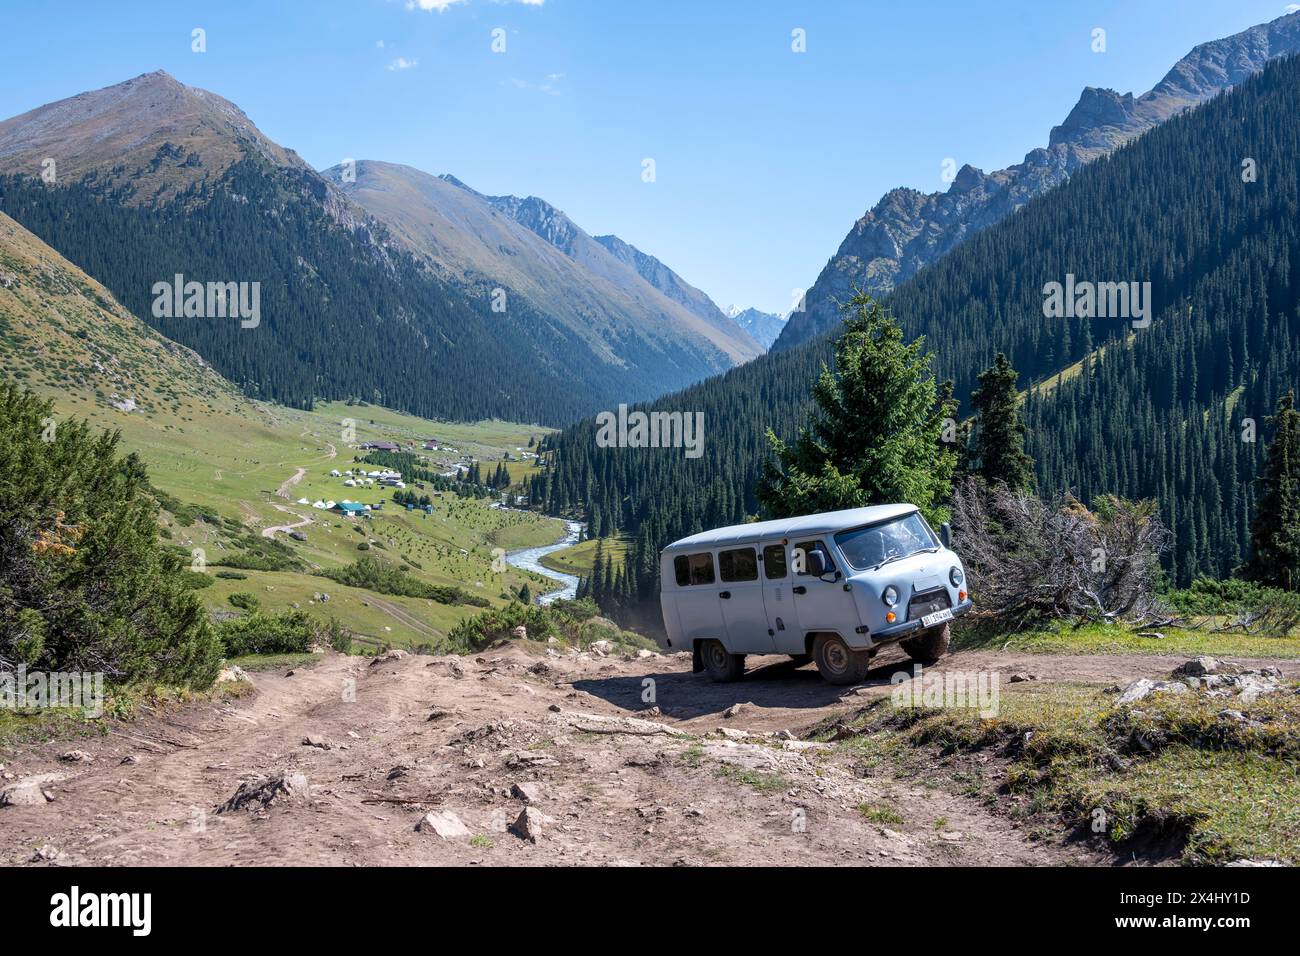 UAZ Buchanka, véhicule tout-terrain russe sur piste 4x4, vallée de montagne verte avec village Altyn Arashan, montagnes Tien Shan, Kirghizistan Banque D'Images